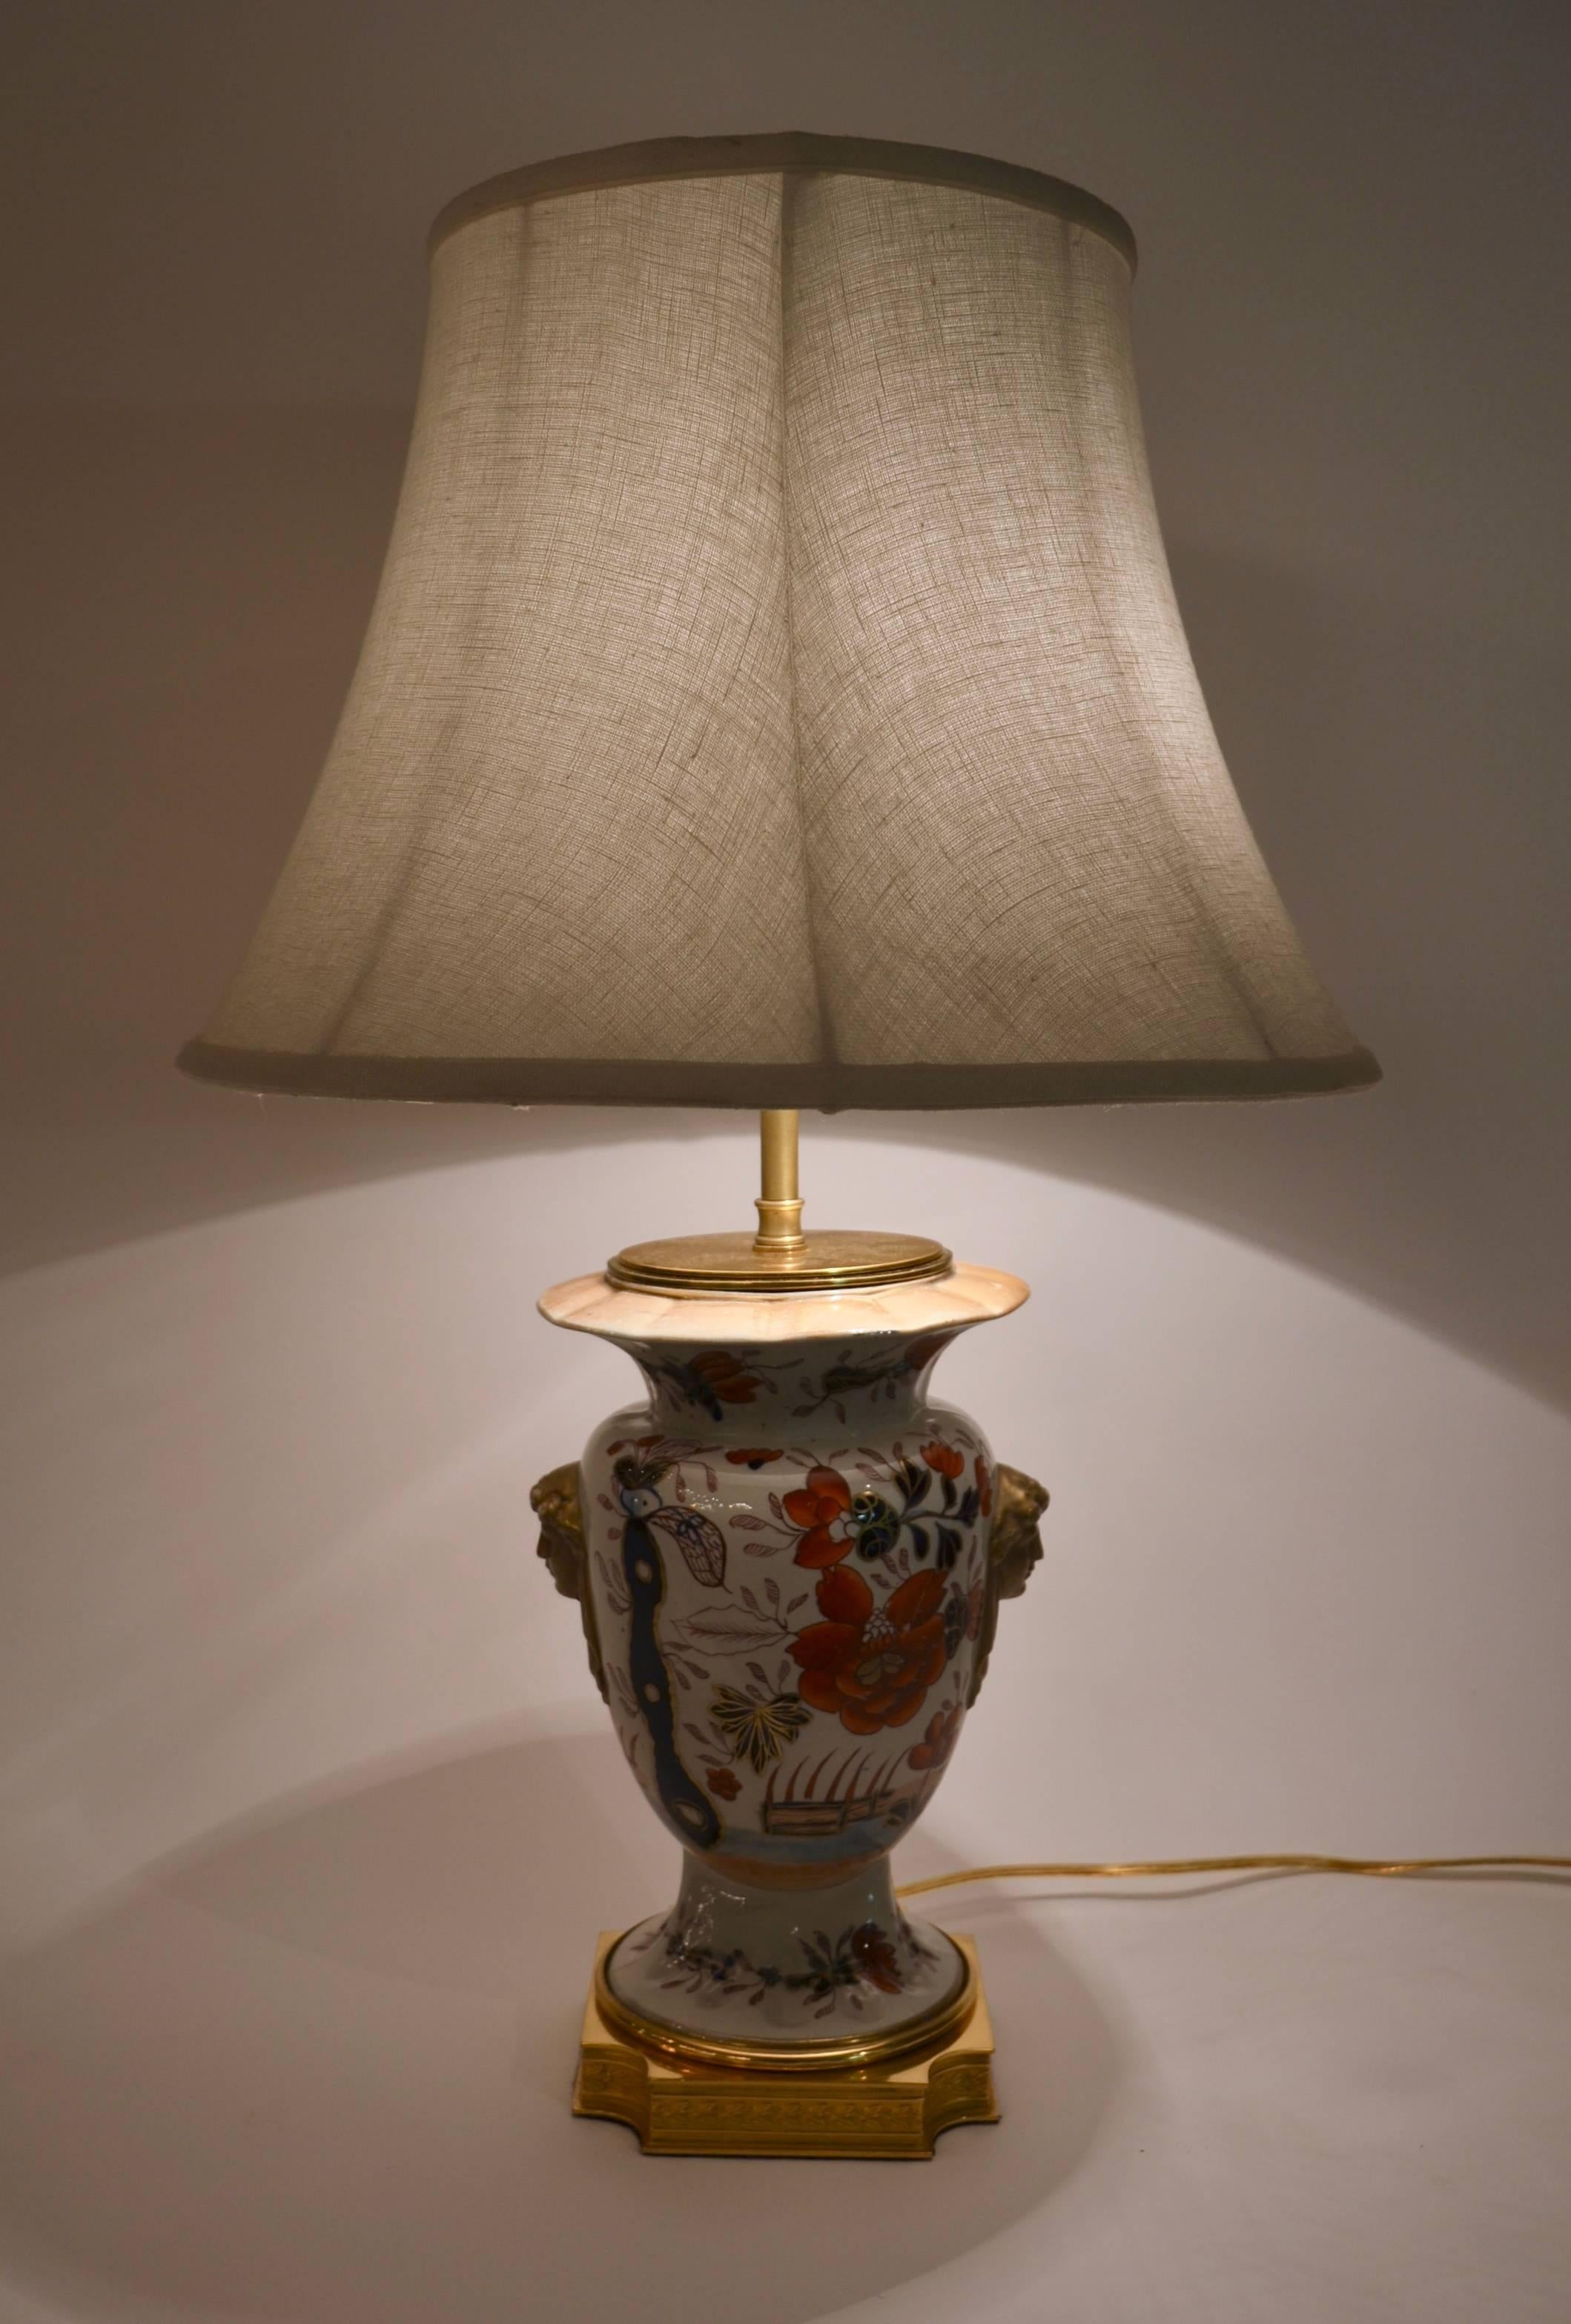 Une lampe merveilleuse avec de bons détails et de belles couleurs.